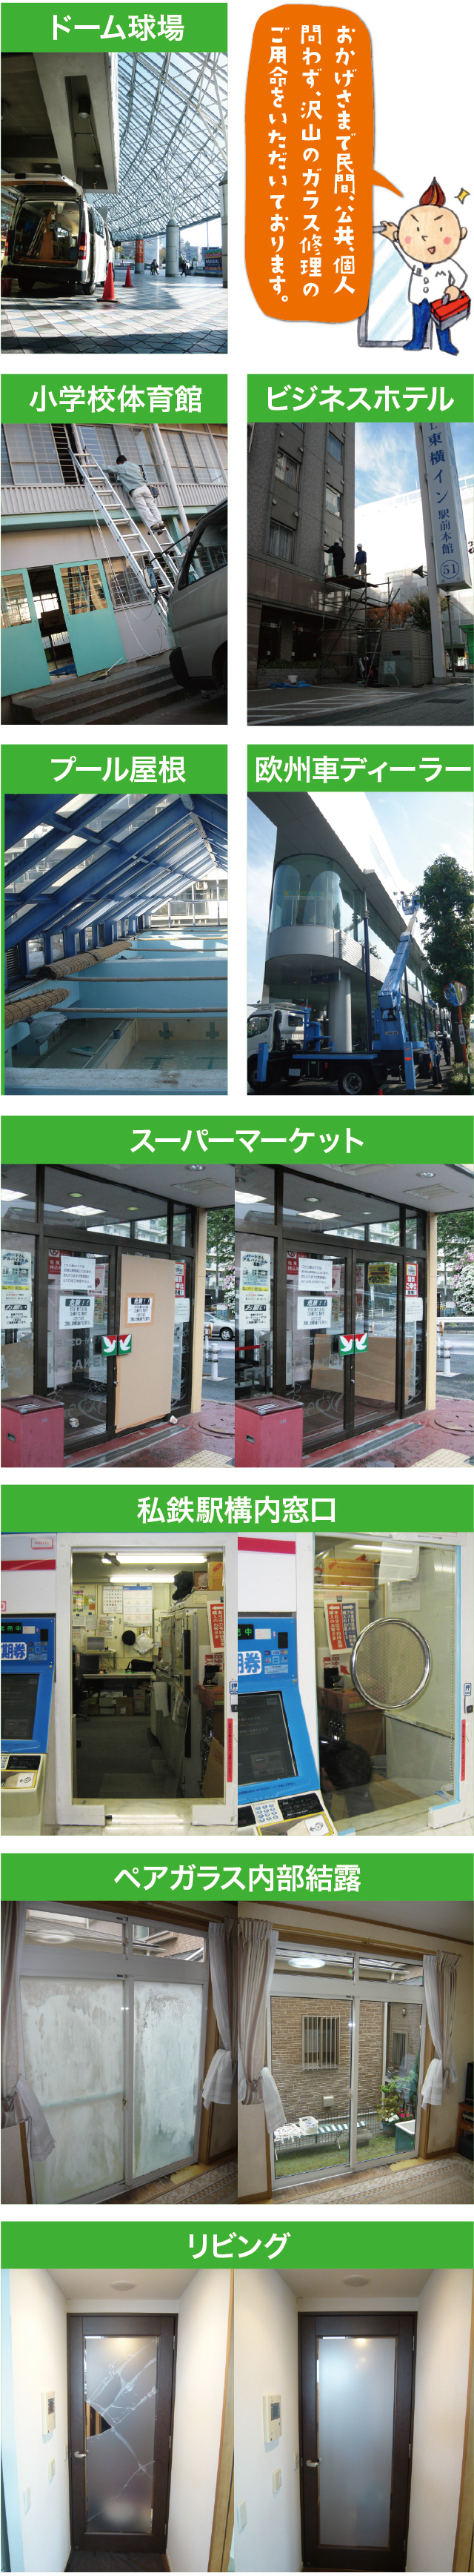 窓ガラス修理 交換すぐに対応いたします東京 神奈川全域 ガラス窓専科